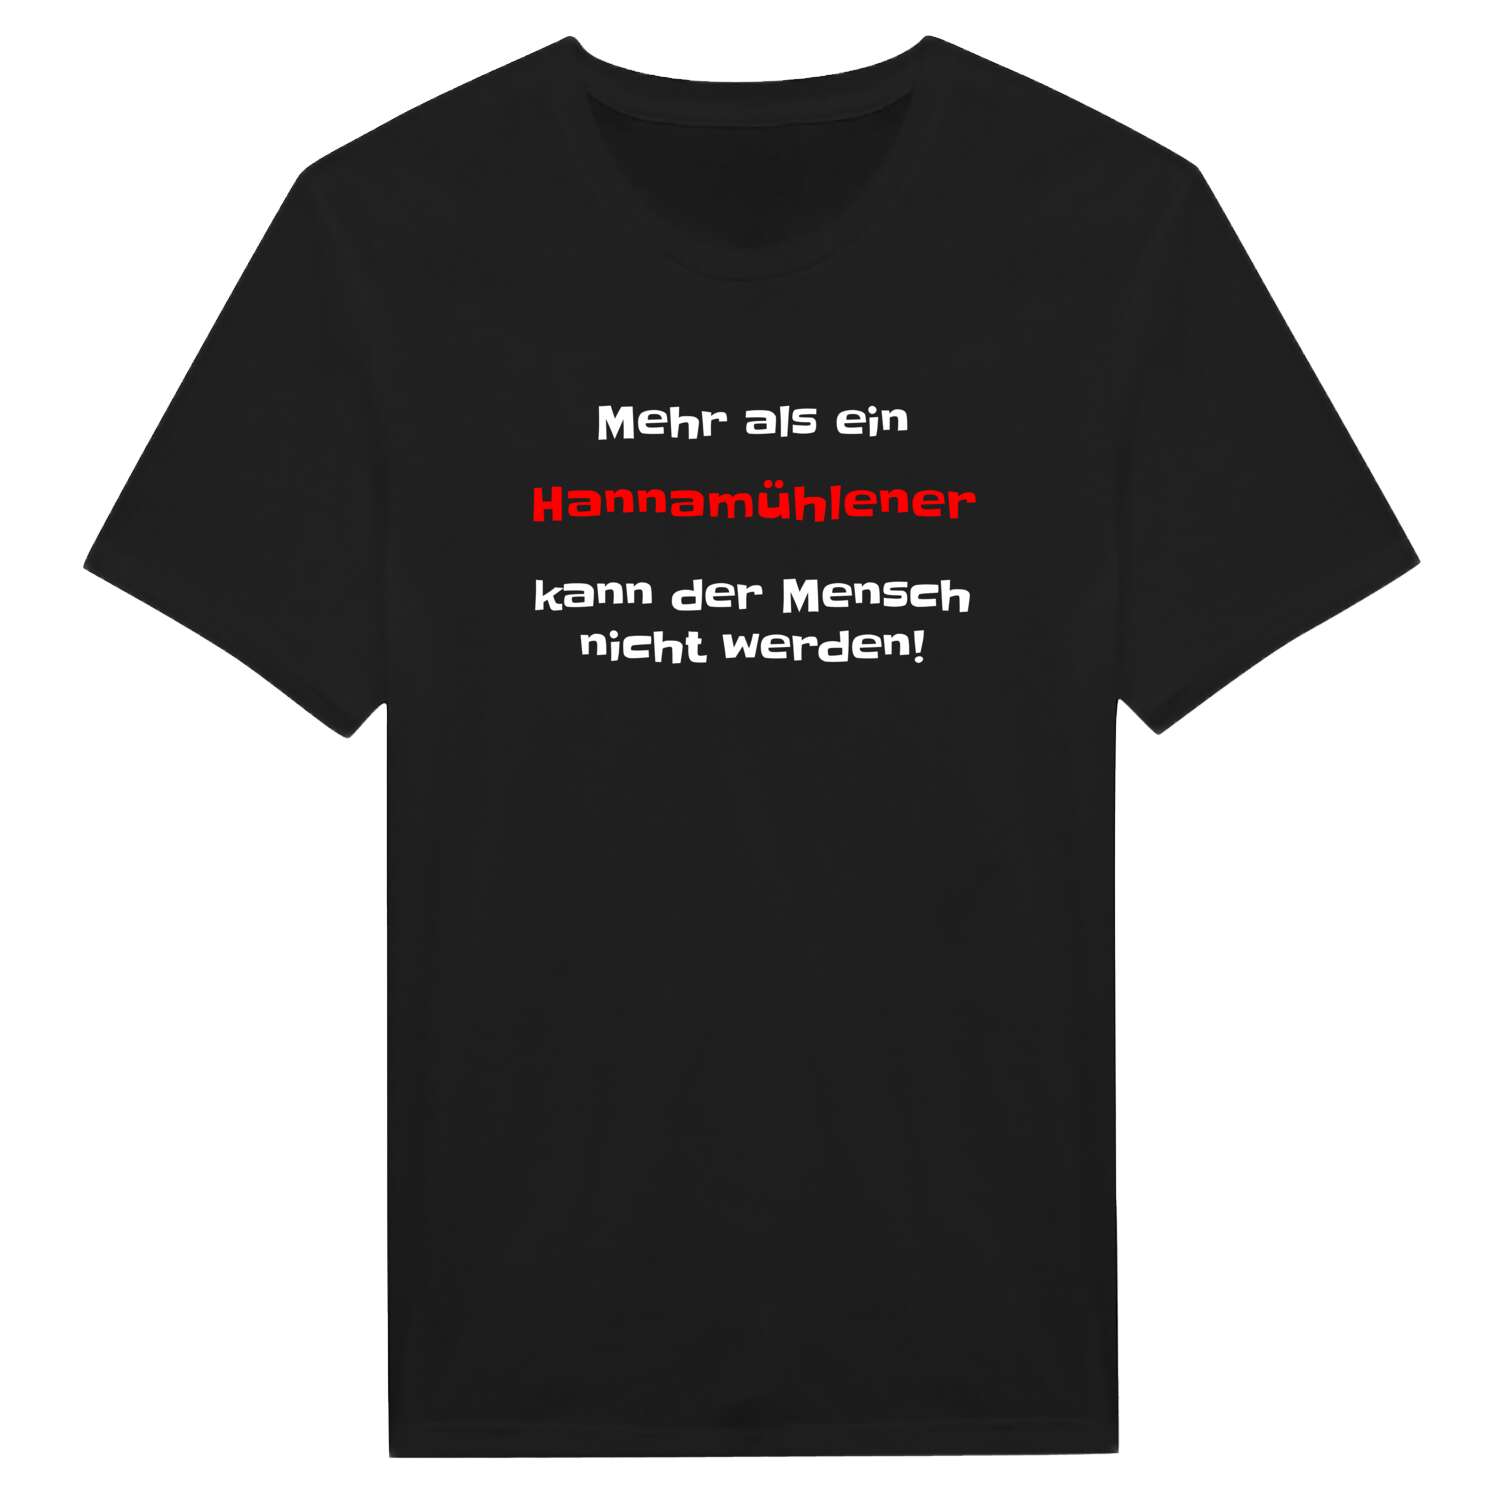 Hannamühle T-Shirt »Mehr als ein«